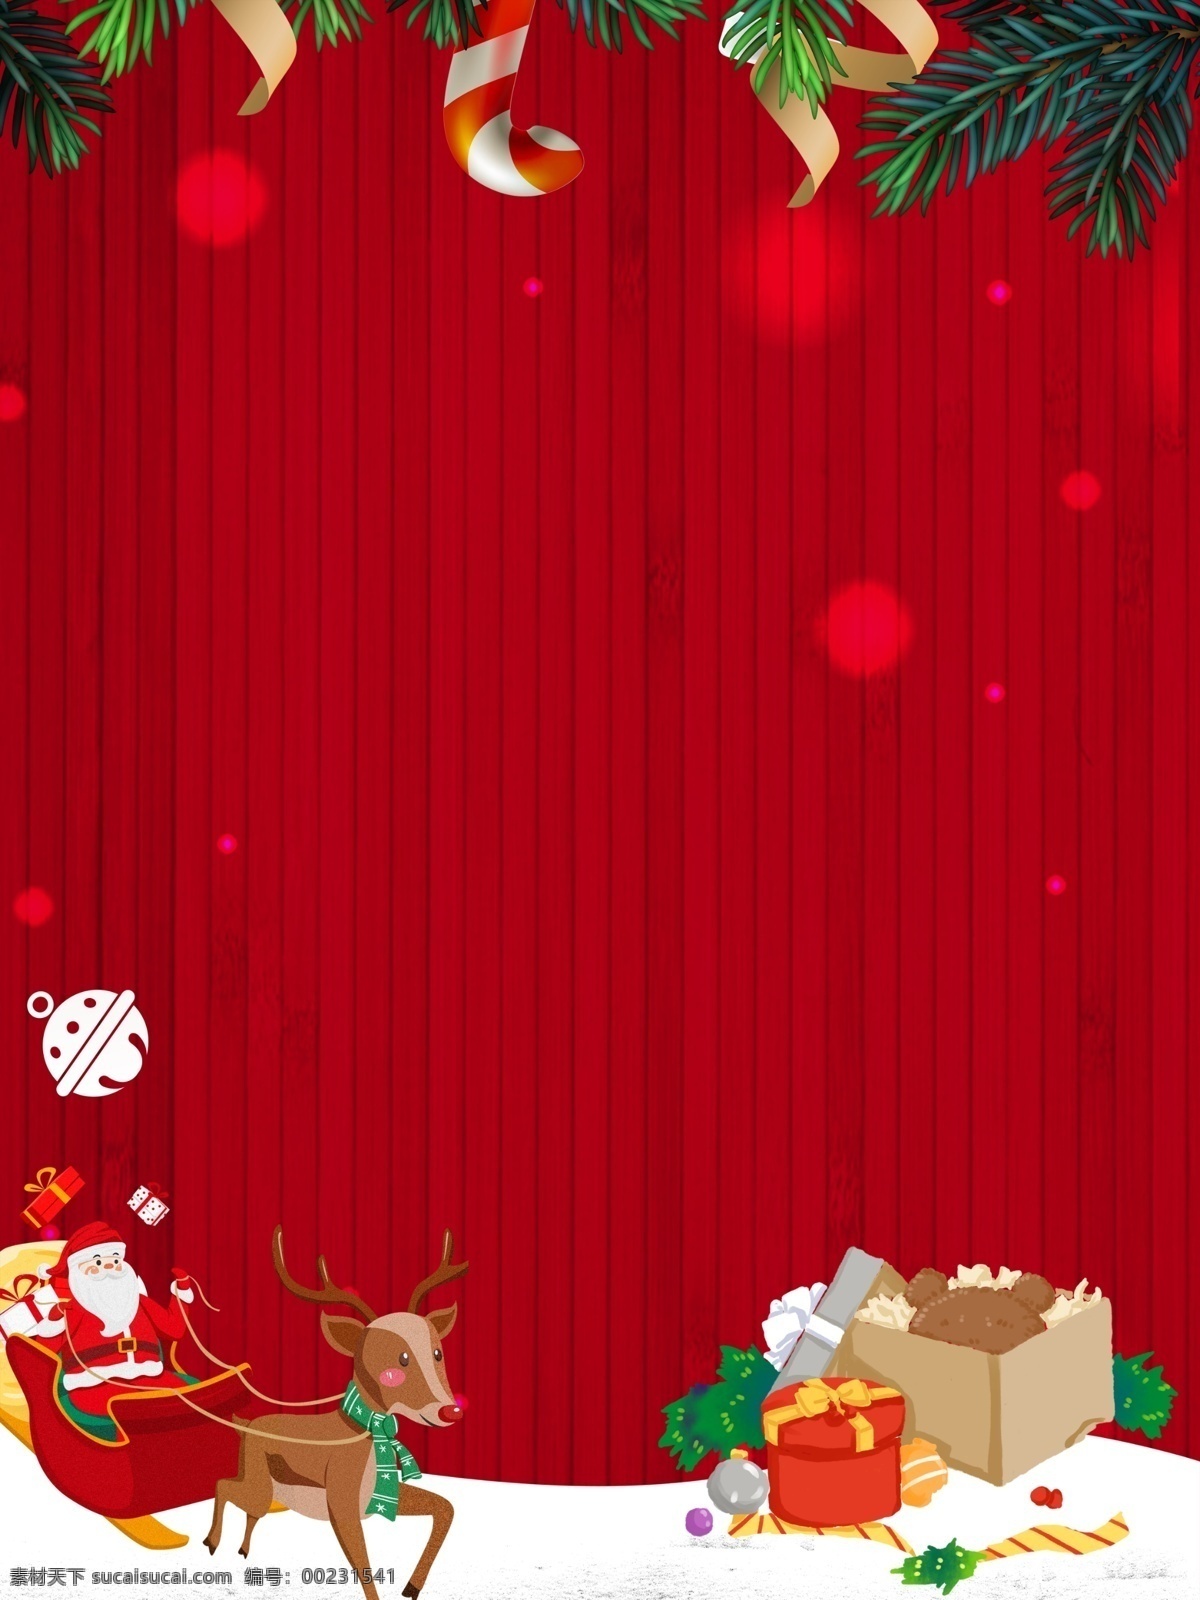 简约 喜庆 圣诞节 红色 背景 红色背景 圣诞节背景 节日背景 圣诞礼物 麋鹿 雪橇 圣诞来了 圣诞背景 平安夜 圣诞老人 圣诞活动背景